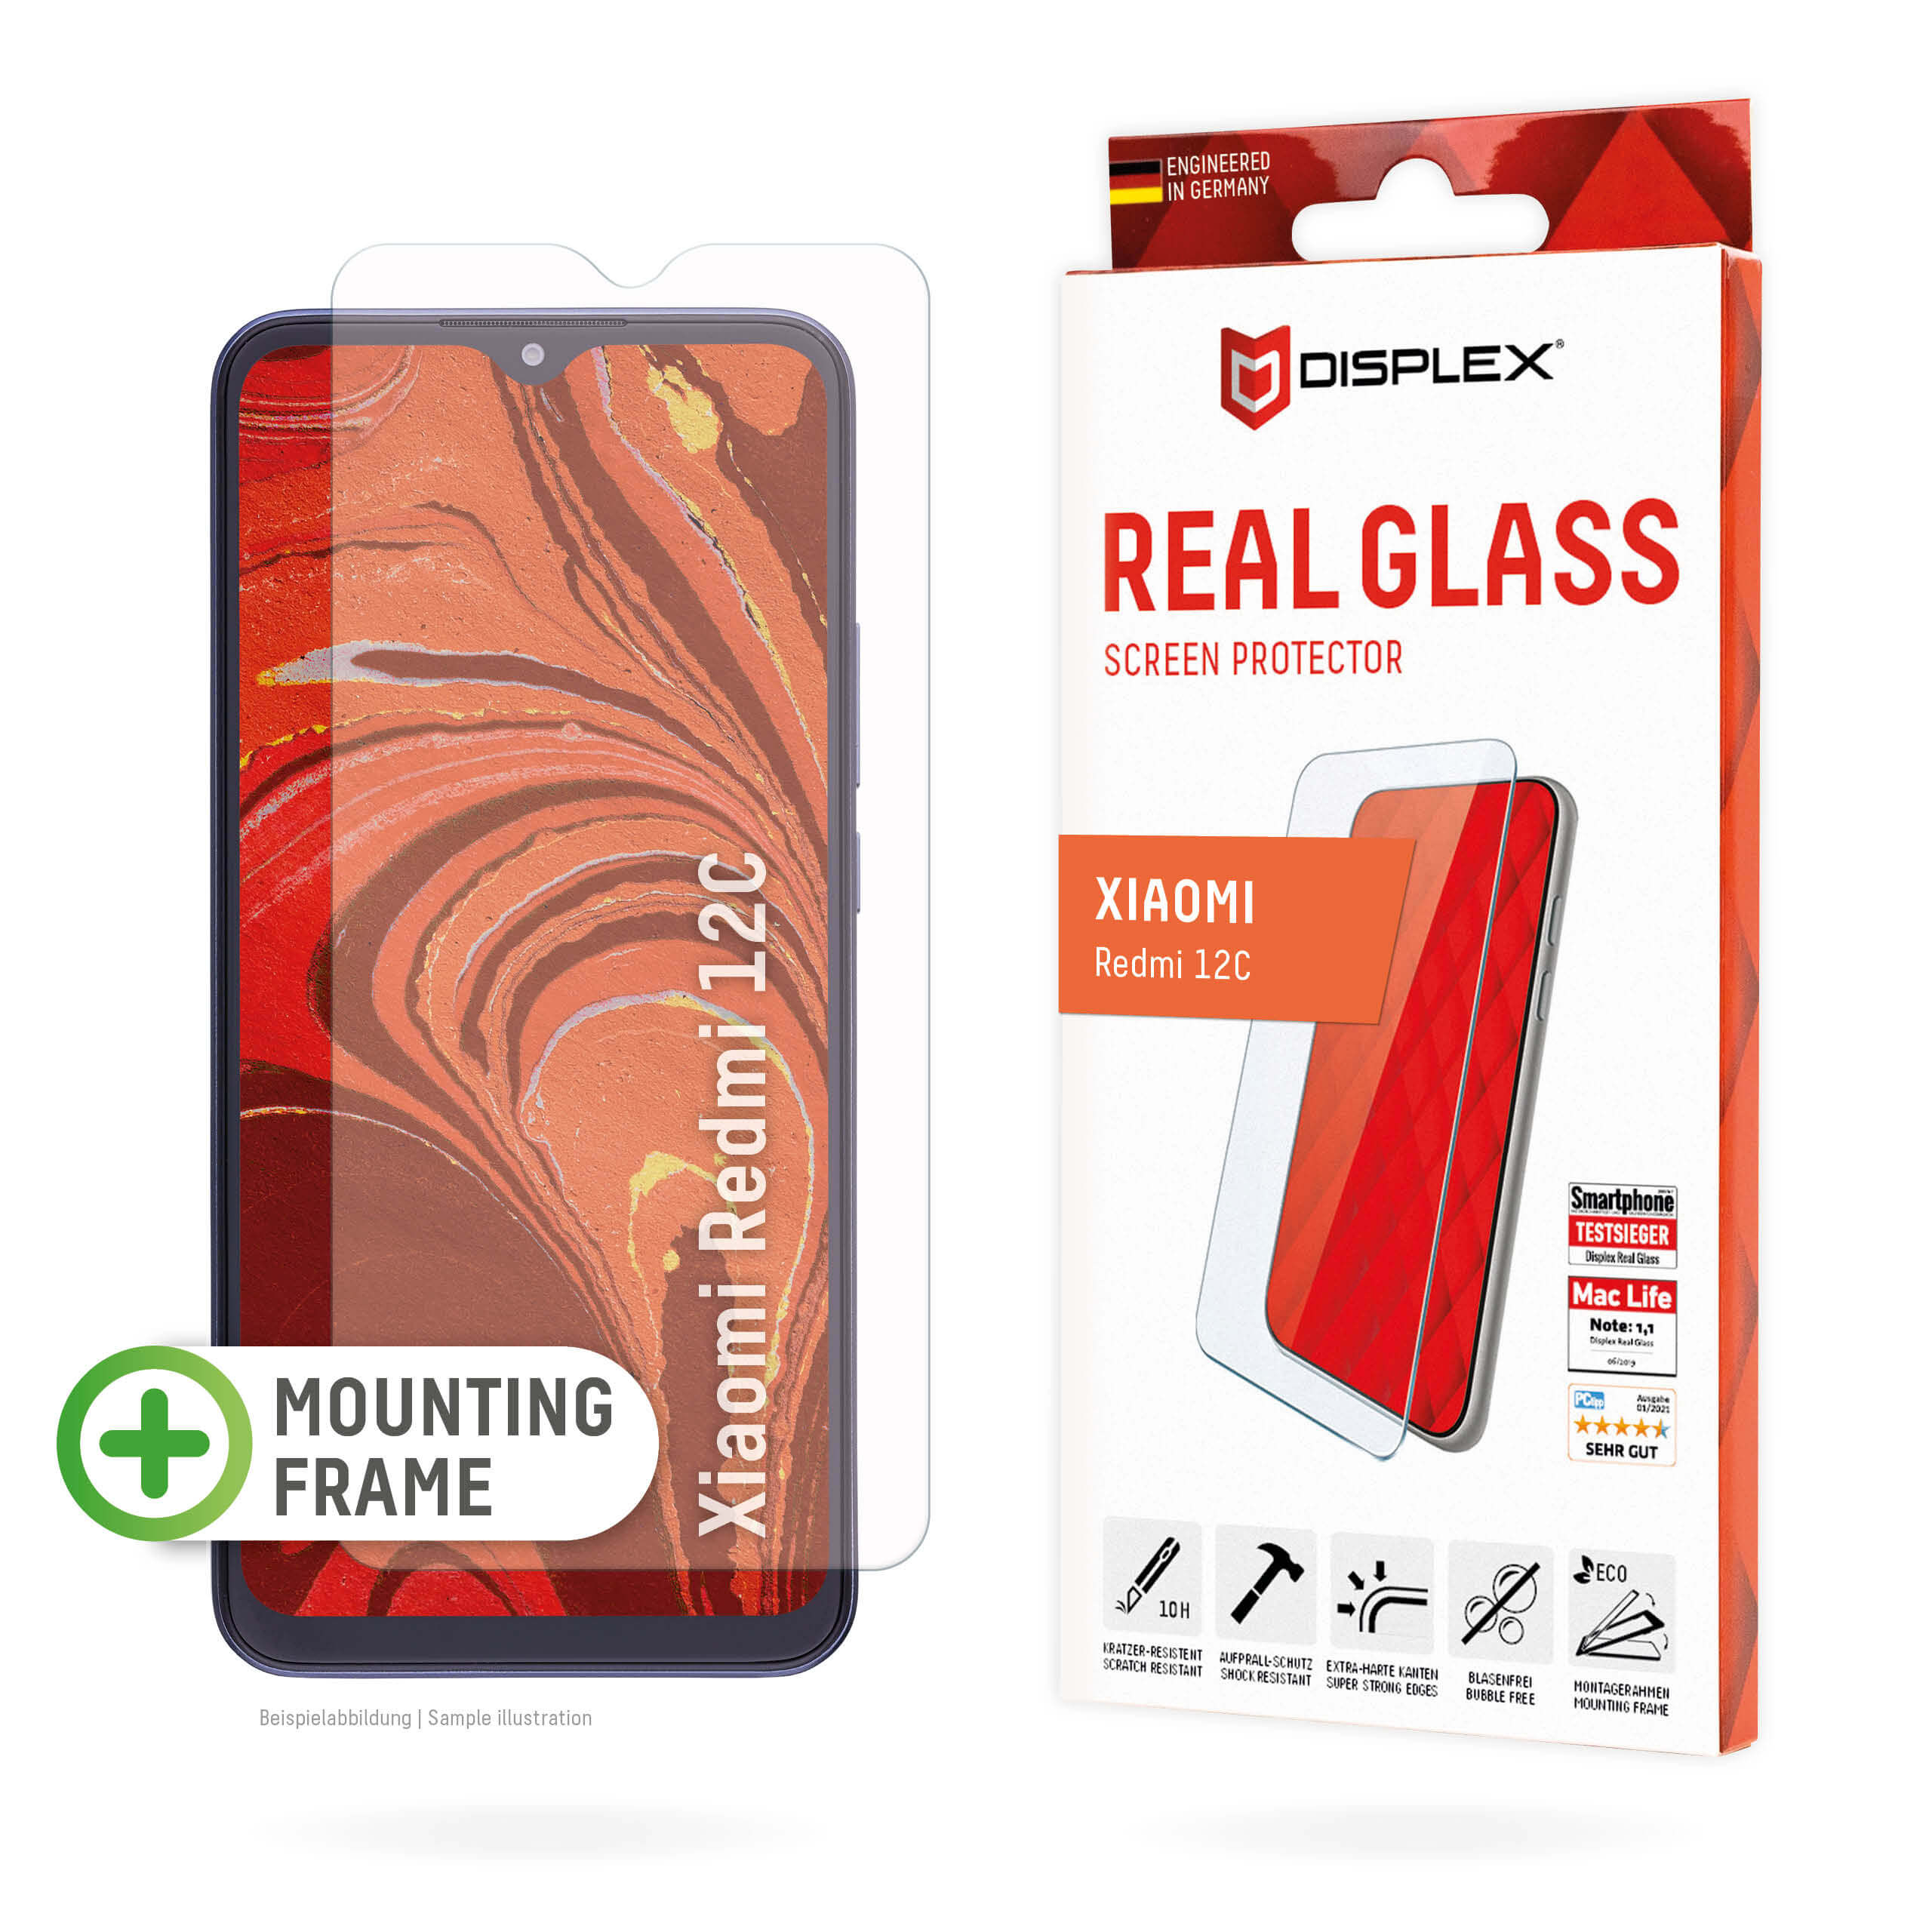 01817-Xiaomi-Redmi-12C-Real-Glass-2D-EN